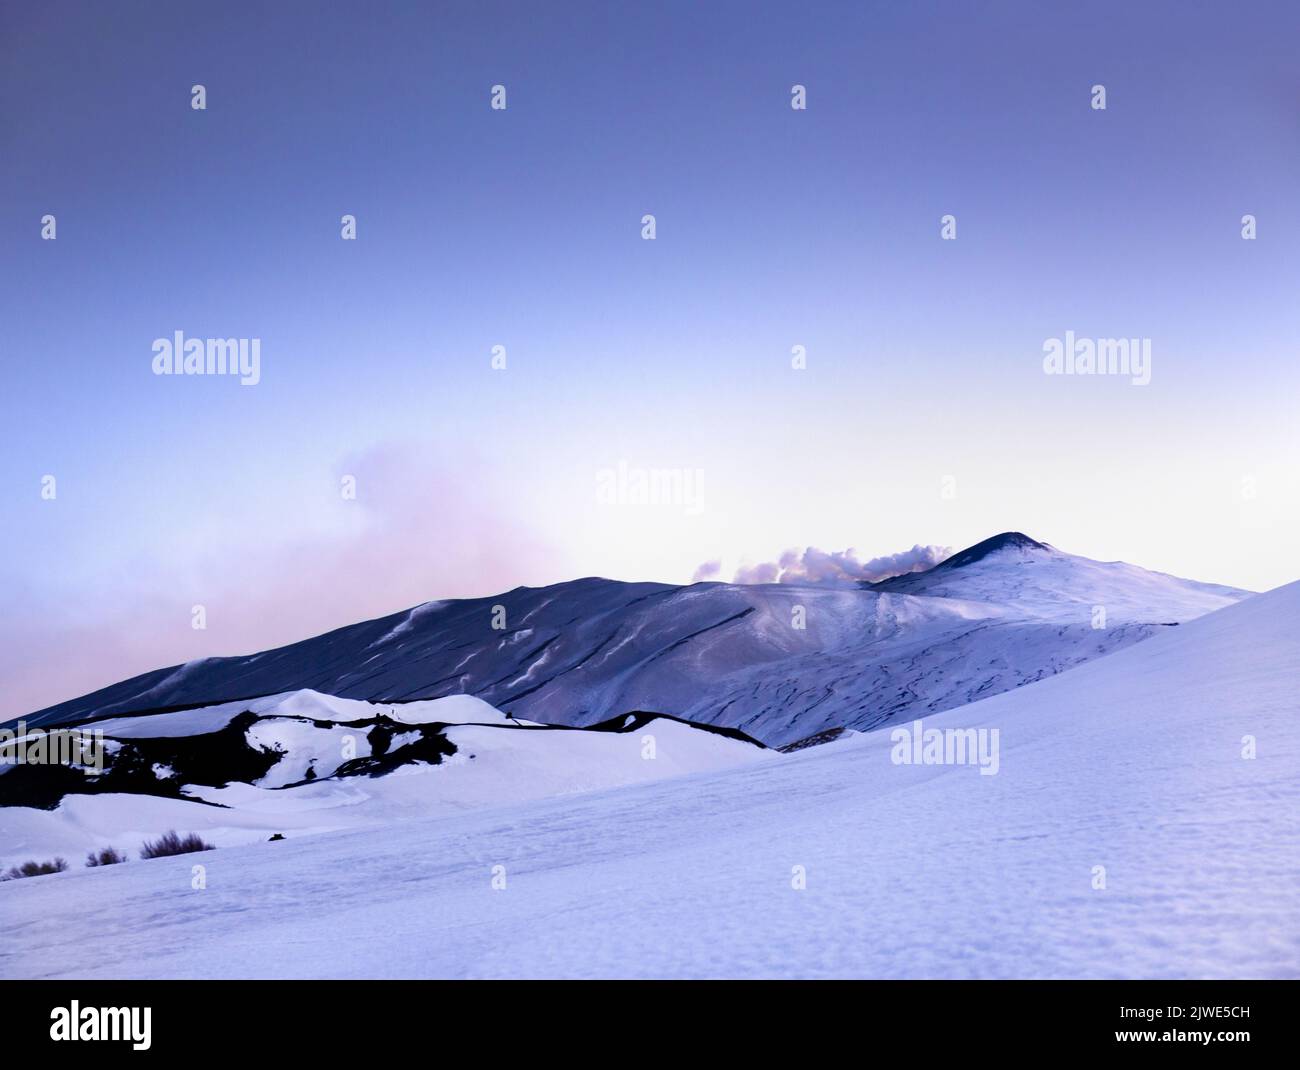 Etna - suggestivo paesaggio invernale con neve al tramonto durante la blue hour sul vulcano Etna al crepuscolo - Sicilia Stock Photo